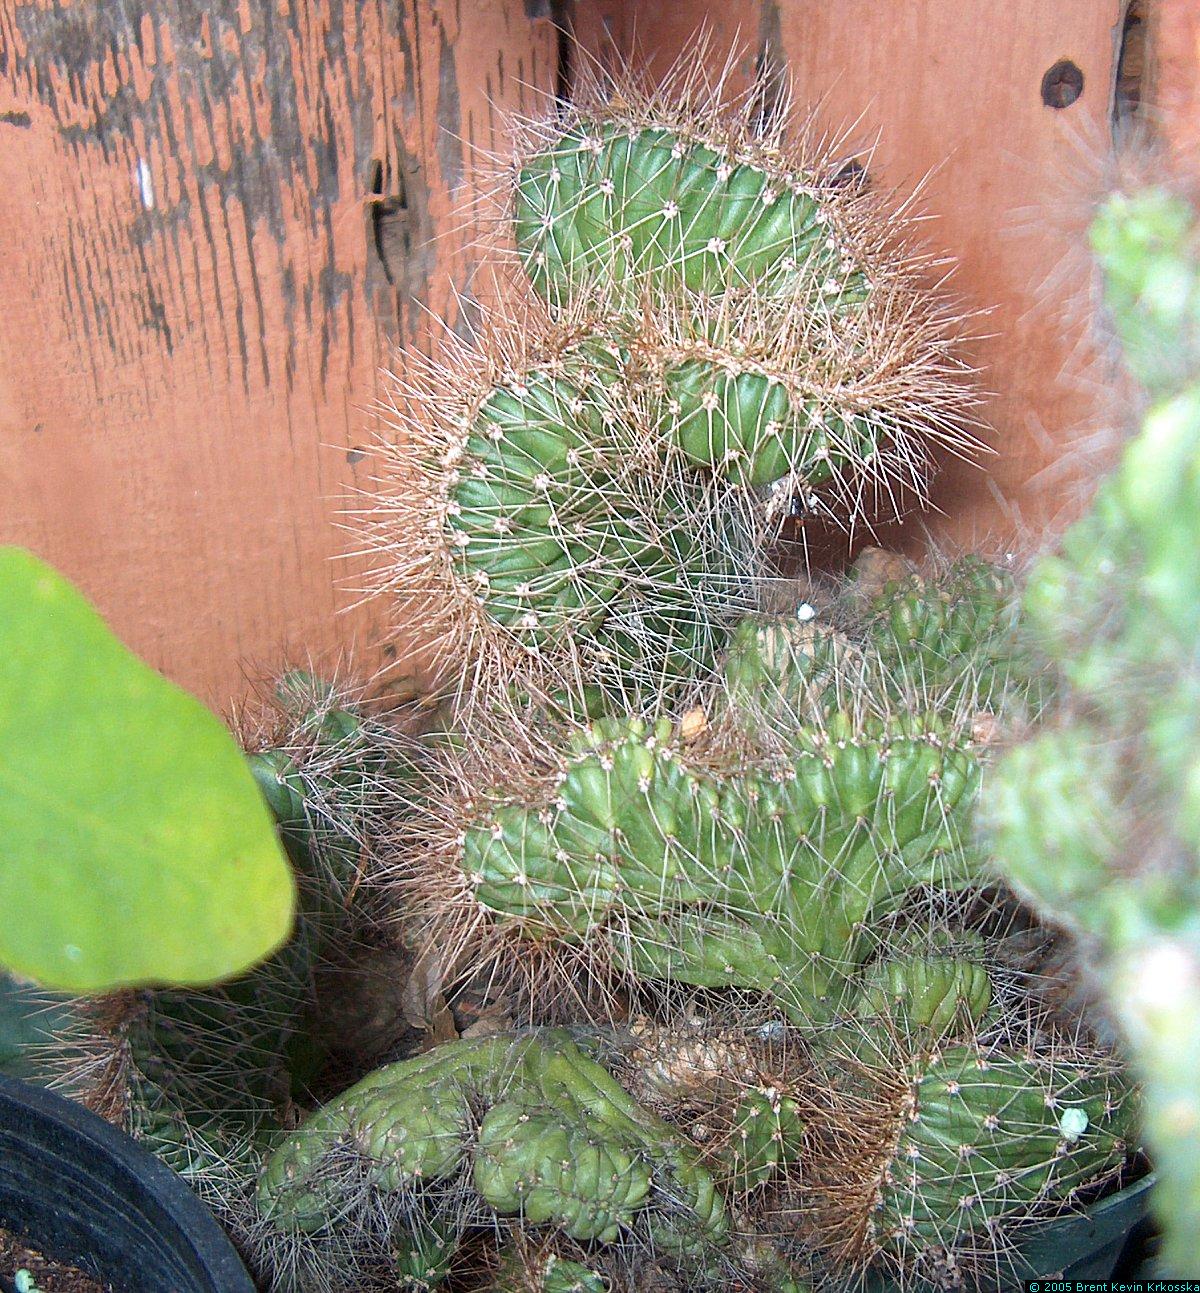 Corryocactus-melanotrichus-cristata